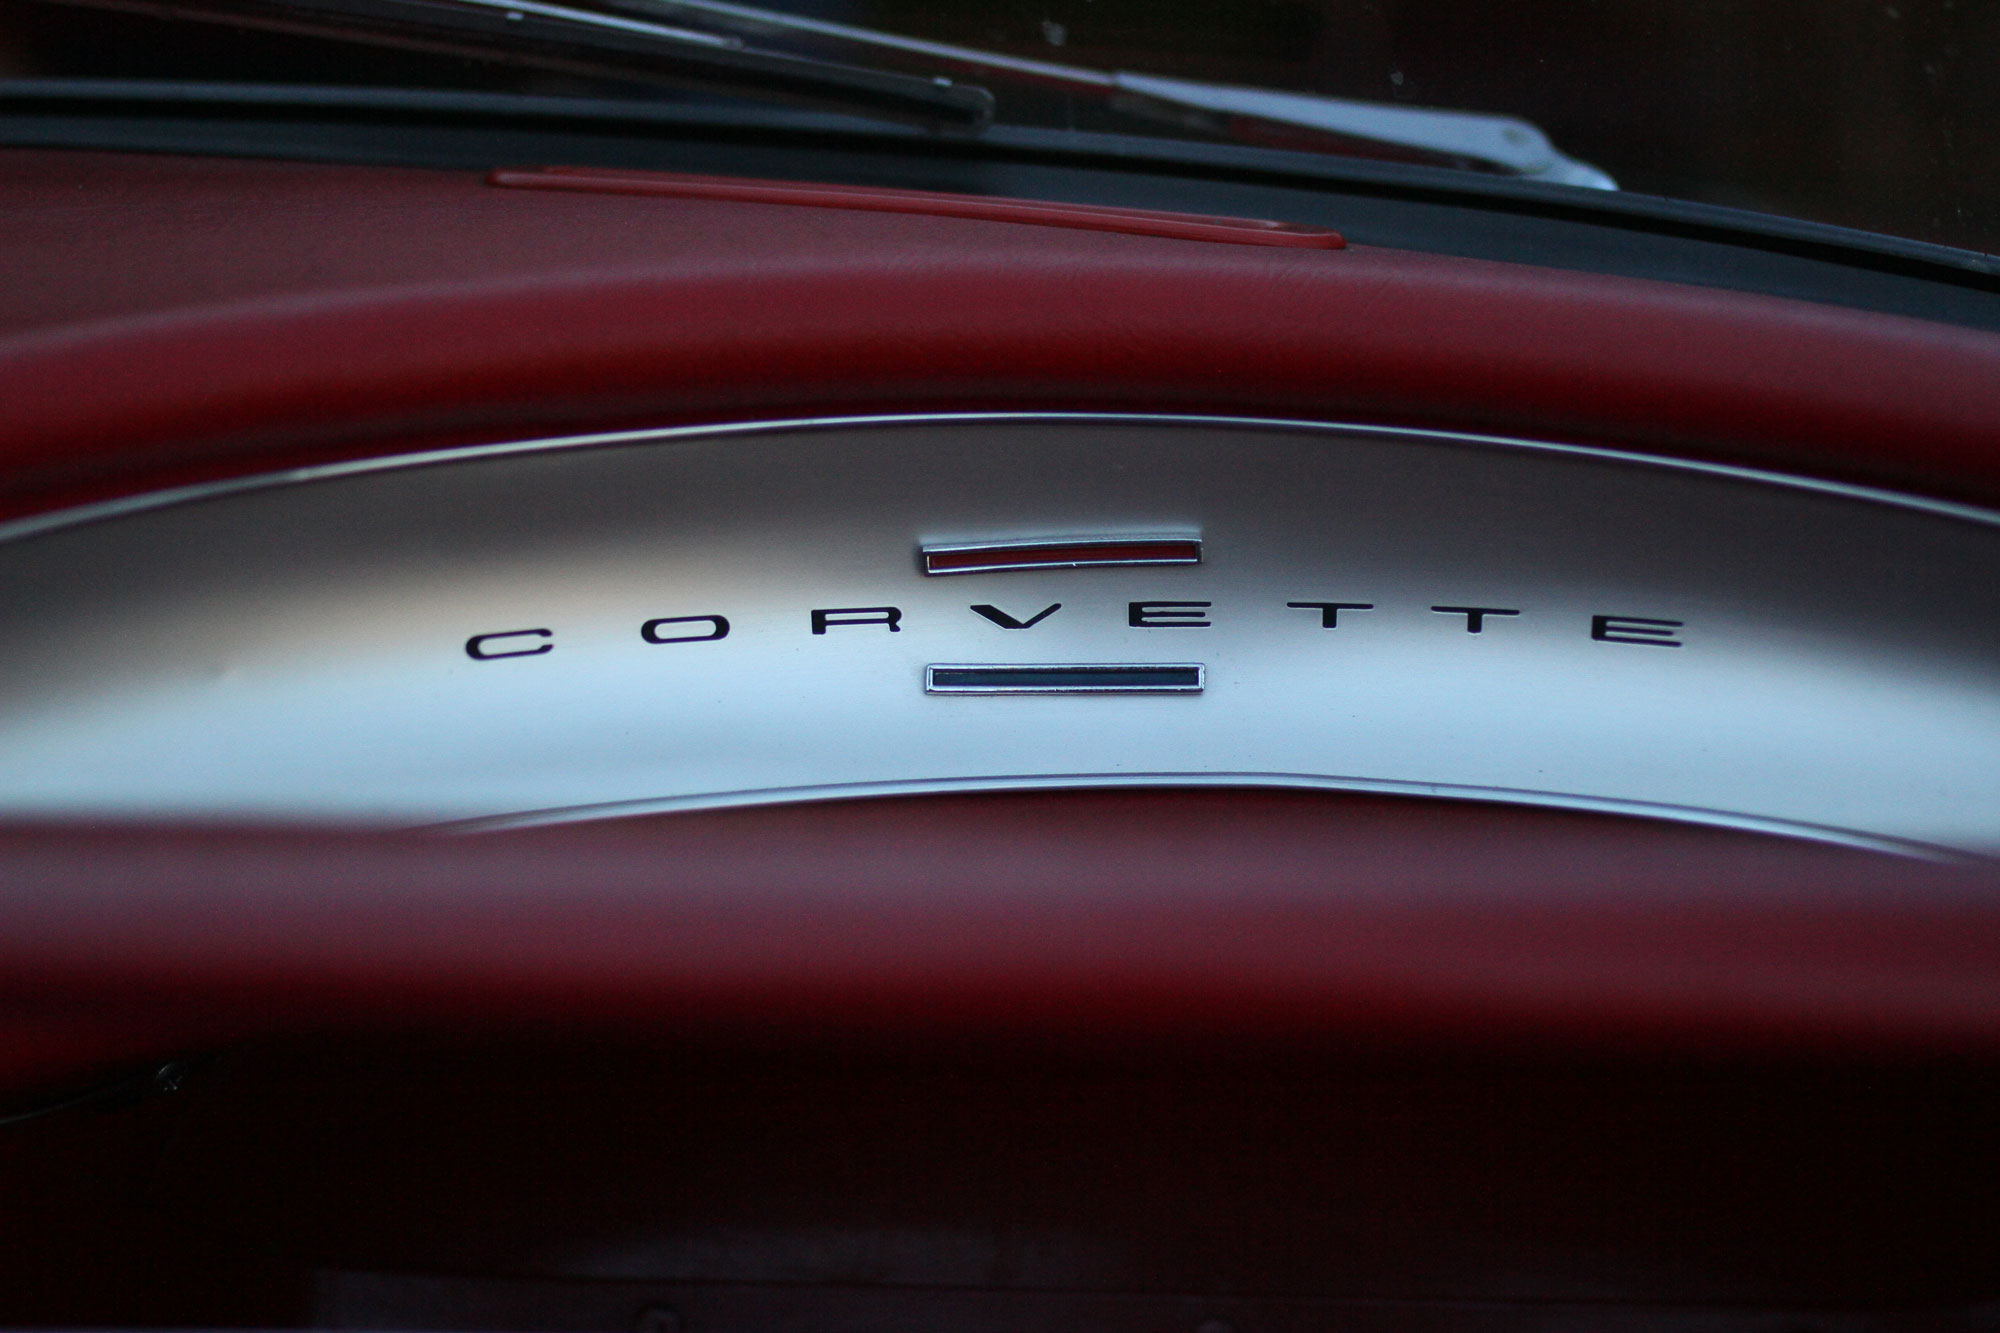 Corvette C1 inredning med corvette fonten och de klassiska röda och blåa färgerna